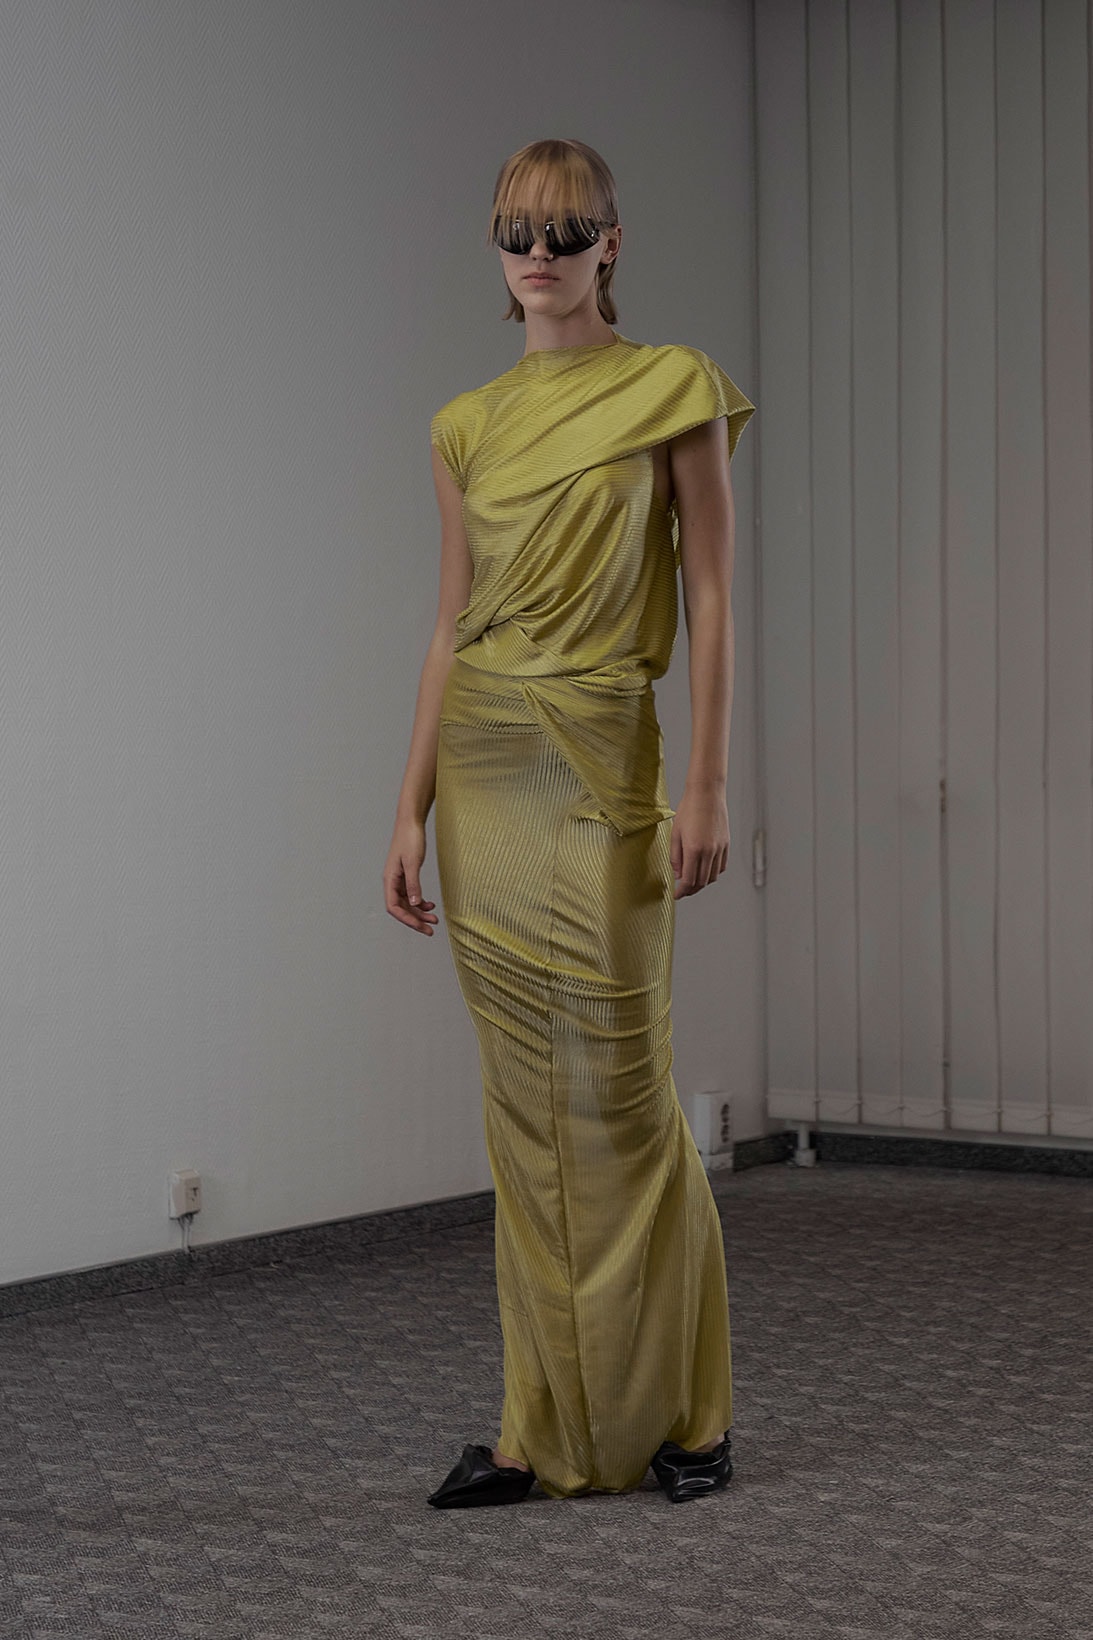 Sia Arnika Spring/Summer 2023 Collection Paris Fashion Week Emerging Designer Images RElease